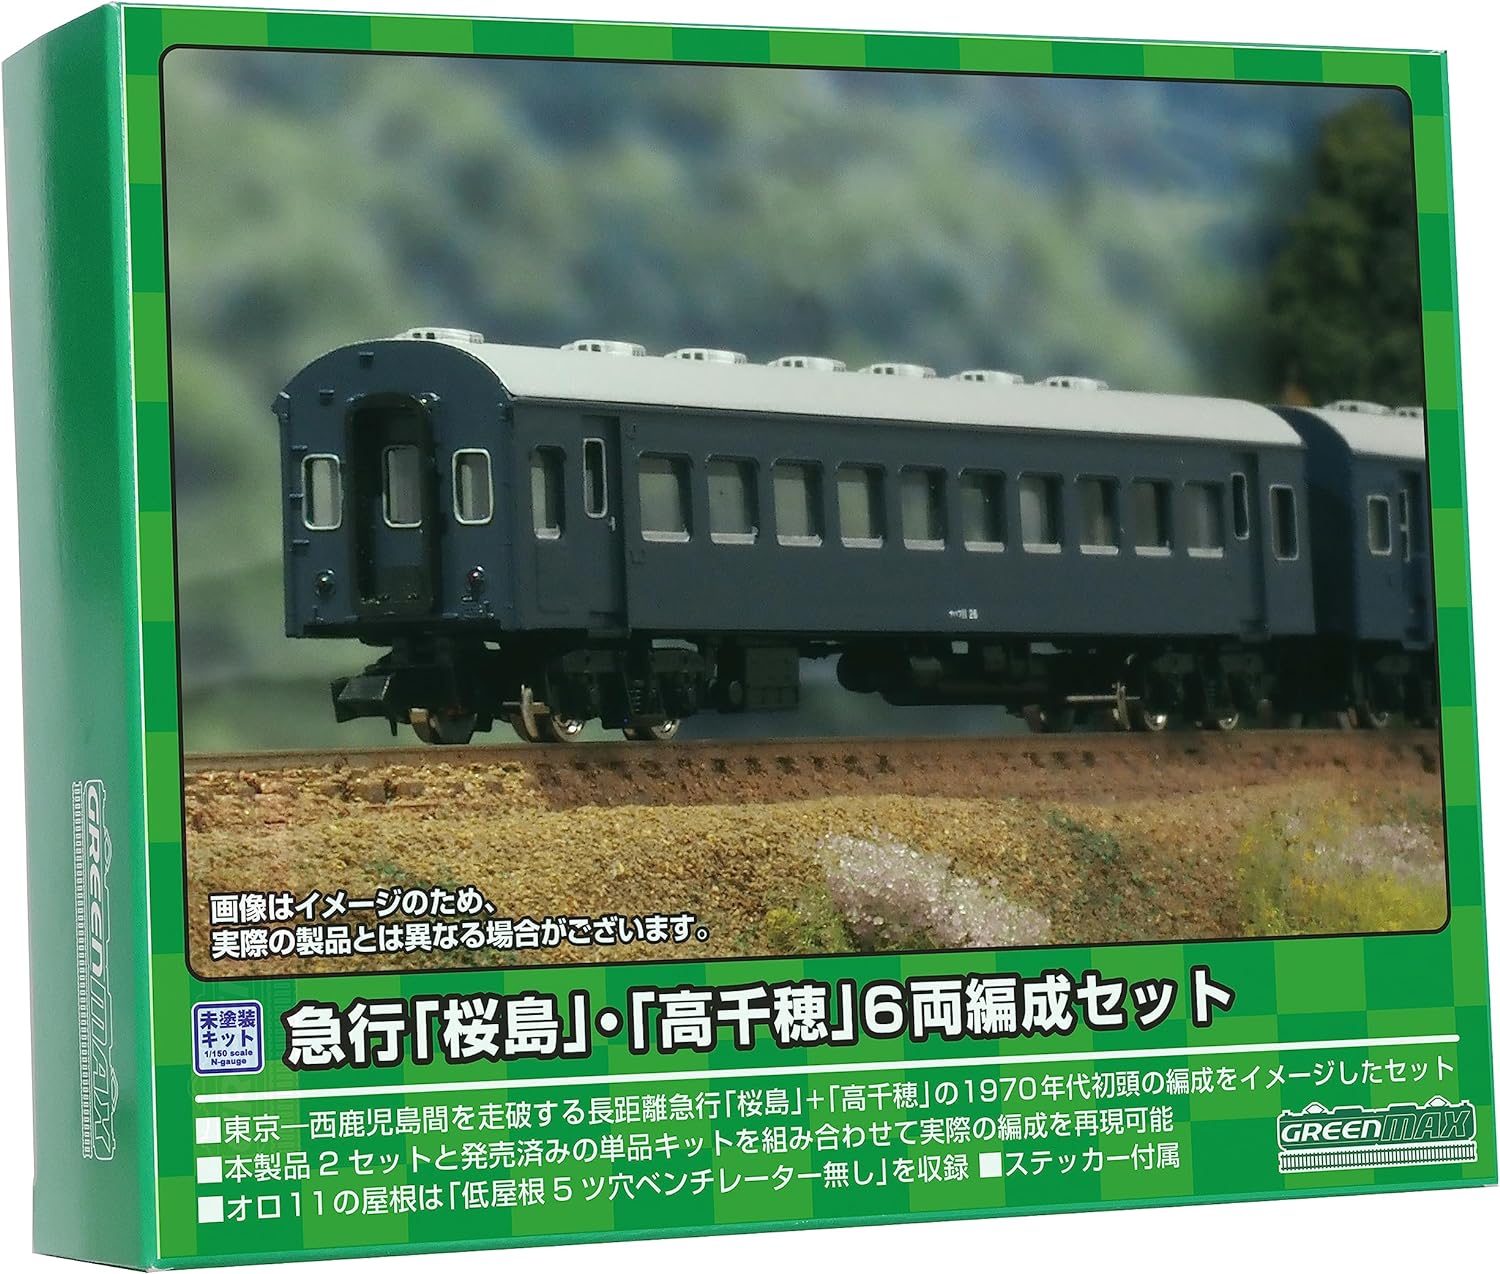 GreenMax 613 N Gauge Express "Sakurajima" / "Takachiho" 6-Car Set - BanzaiHobby